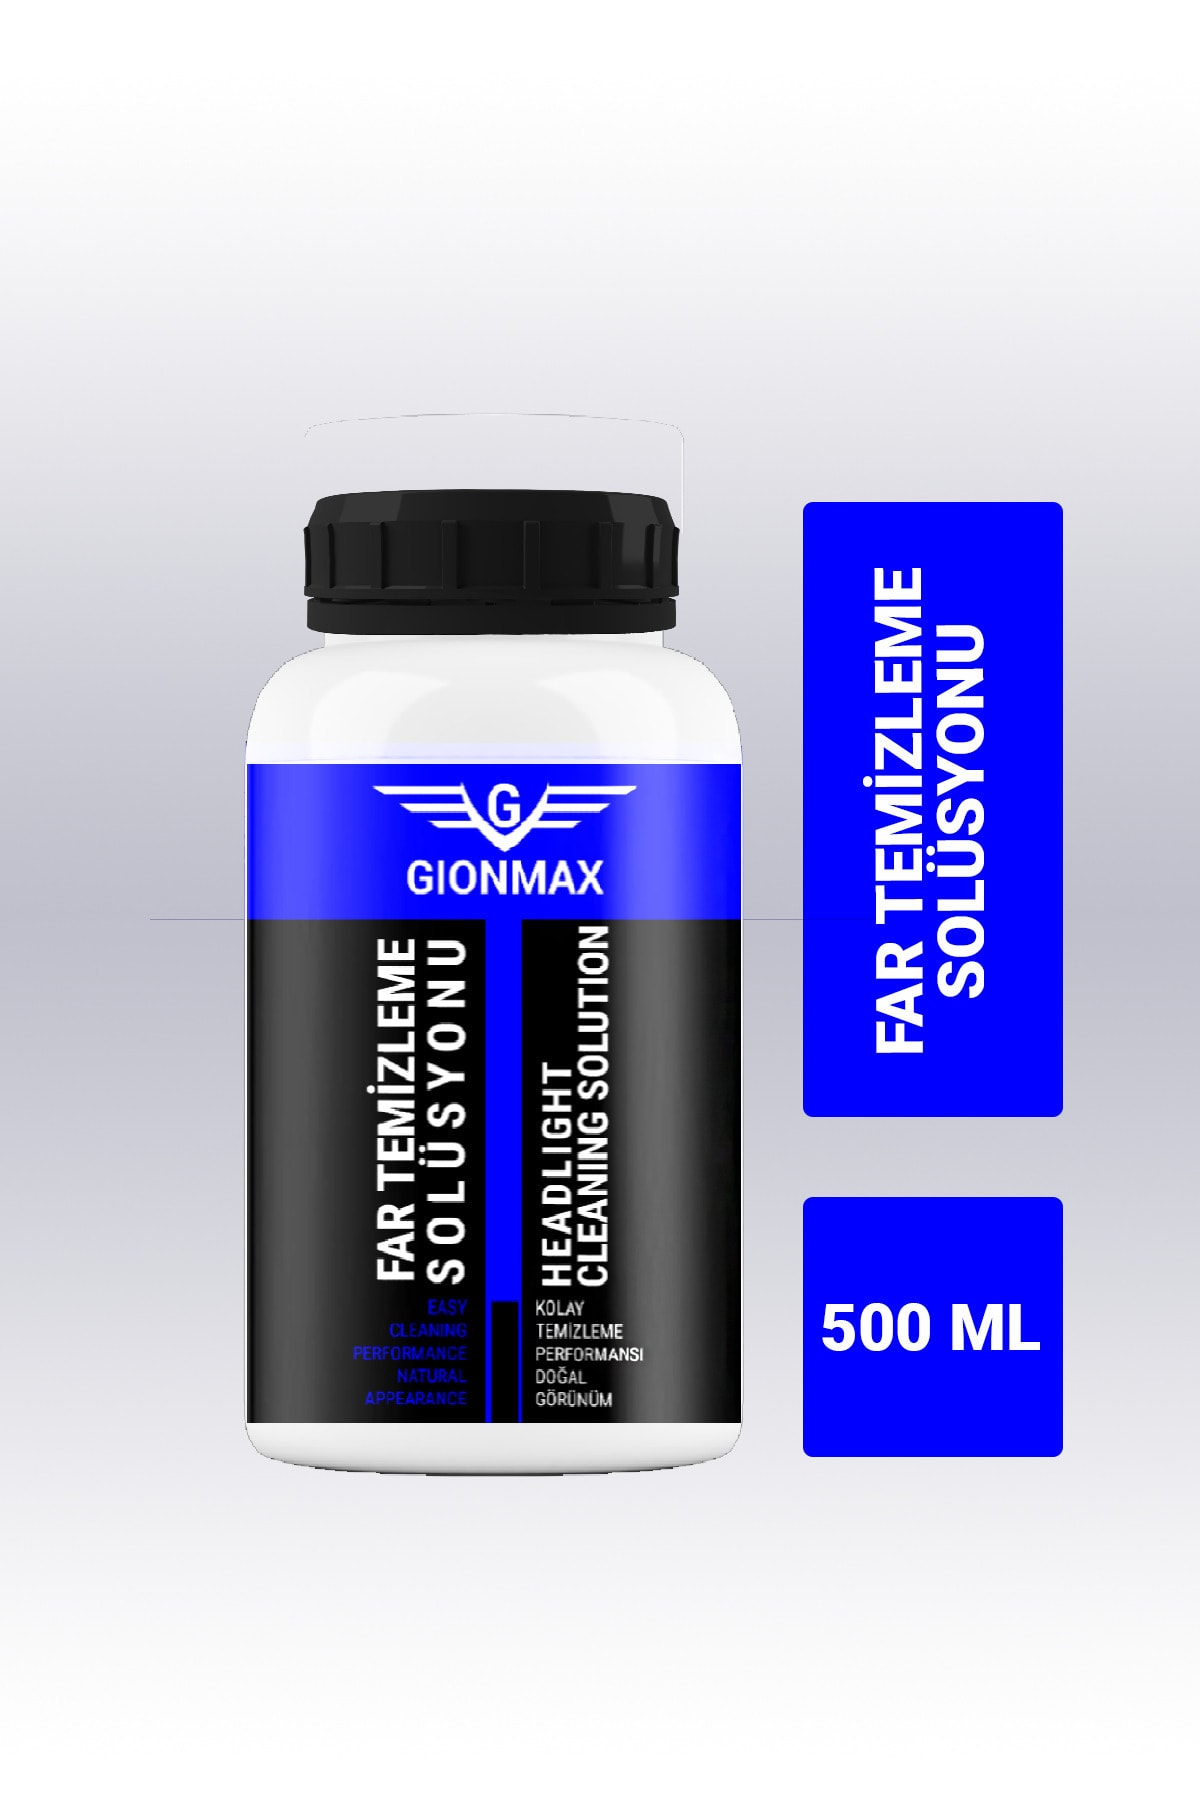 Gionmax Yeni Nesil Far Temizleme Sıvısı 500 ml Kloroform Araba Far Parlatma Kimyasalı